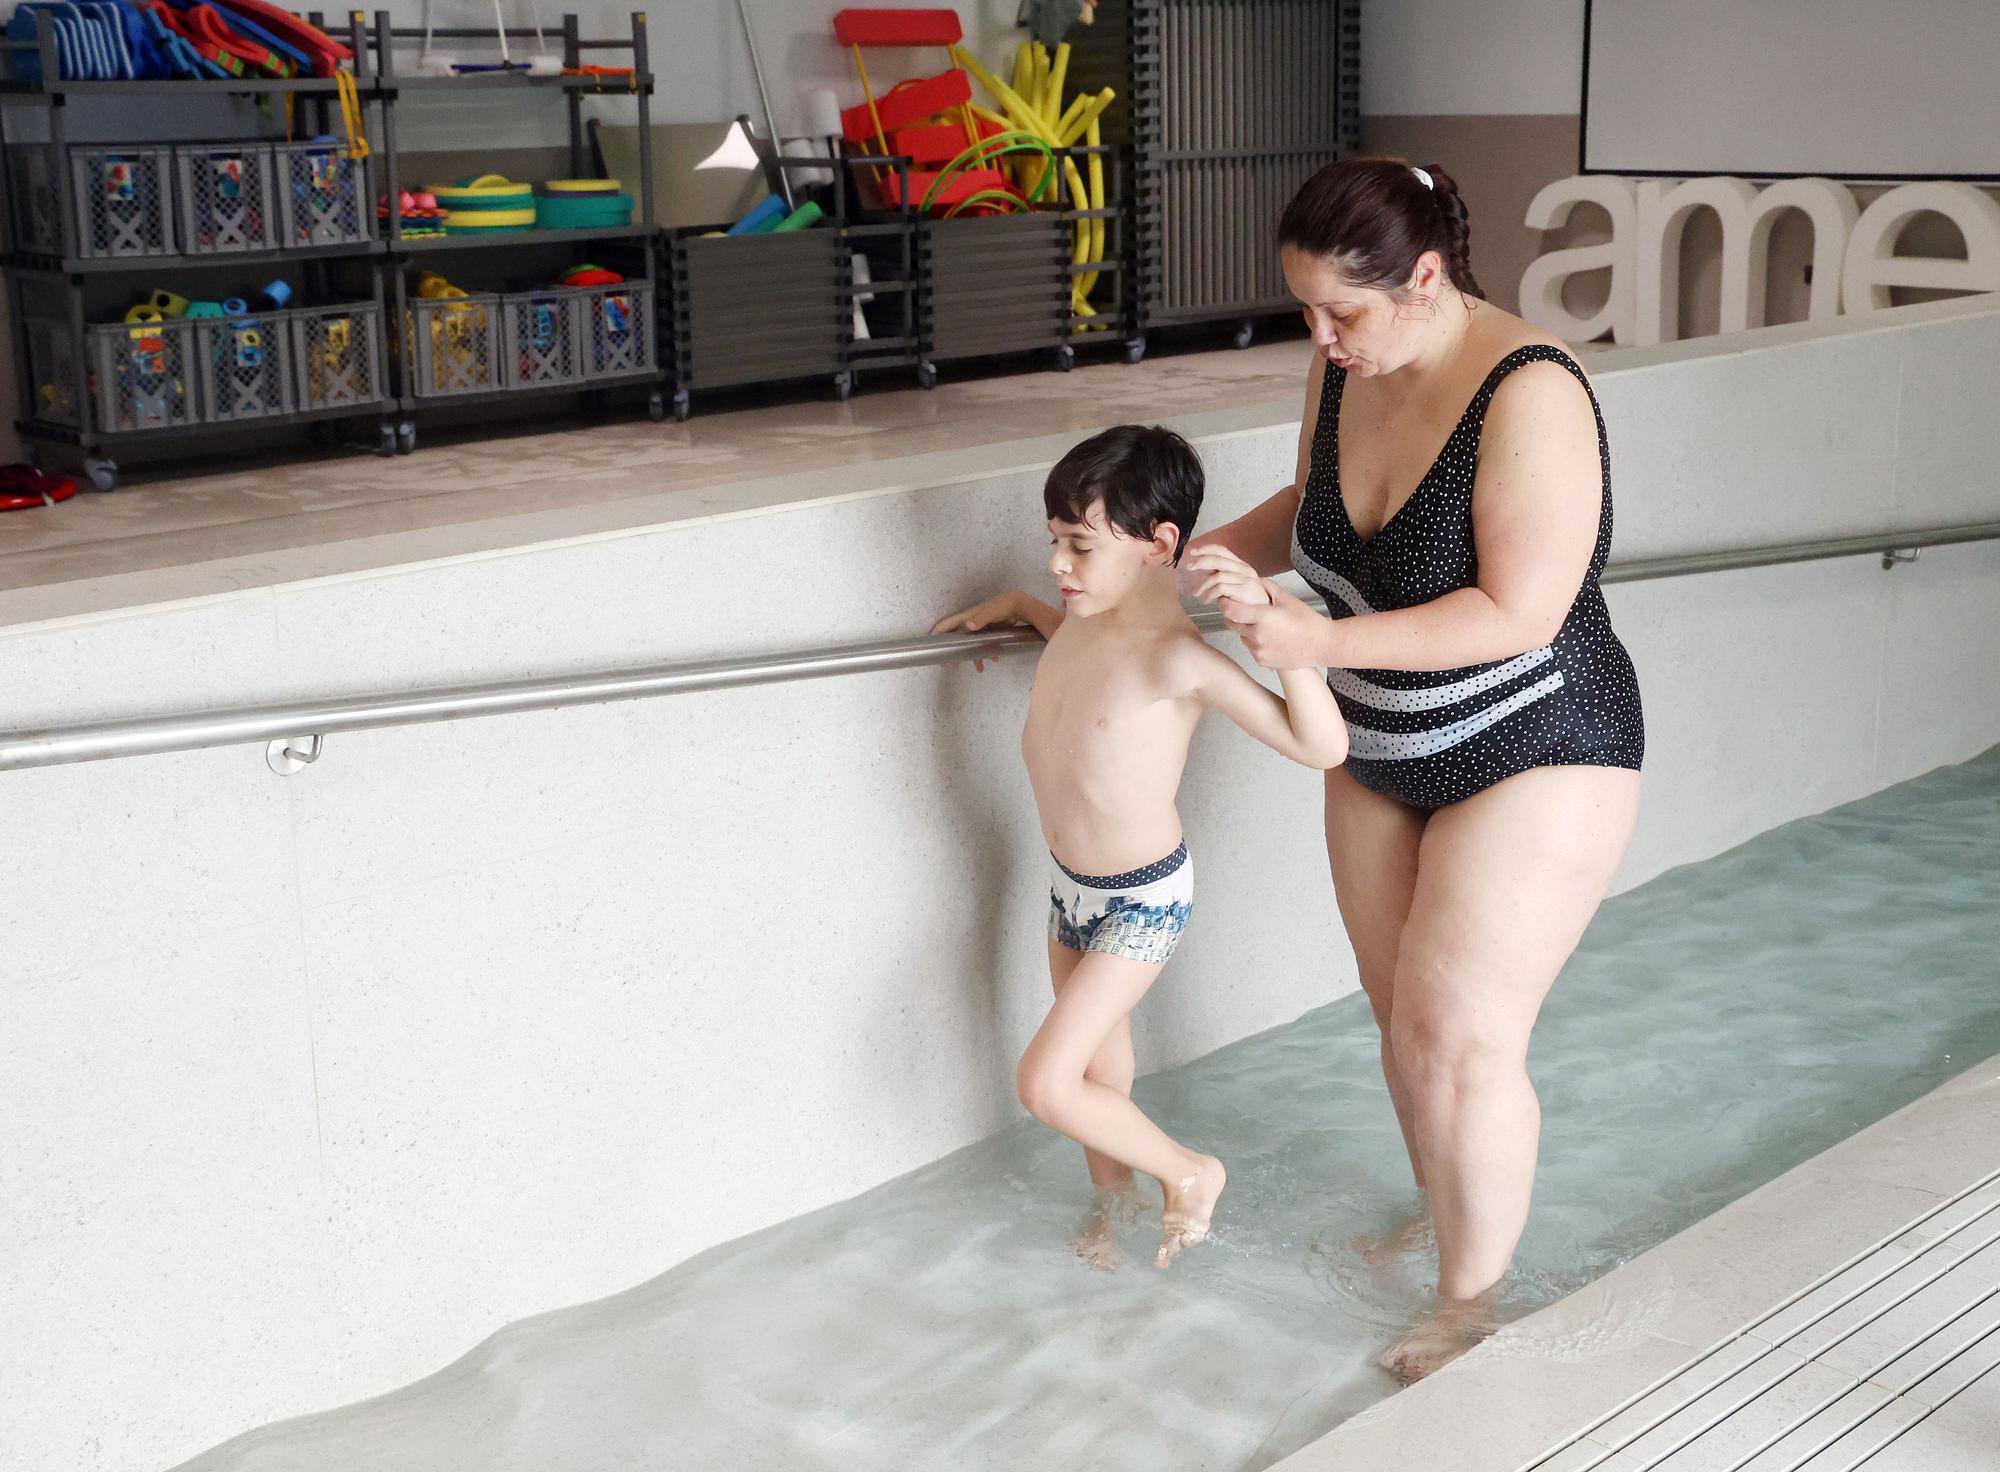 Una terapia tan única como beneficiosa: así es la piscina multisensorial de Amencer-Aspace en Vigo